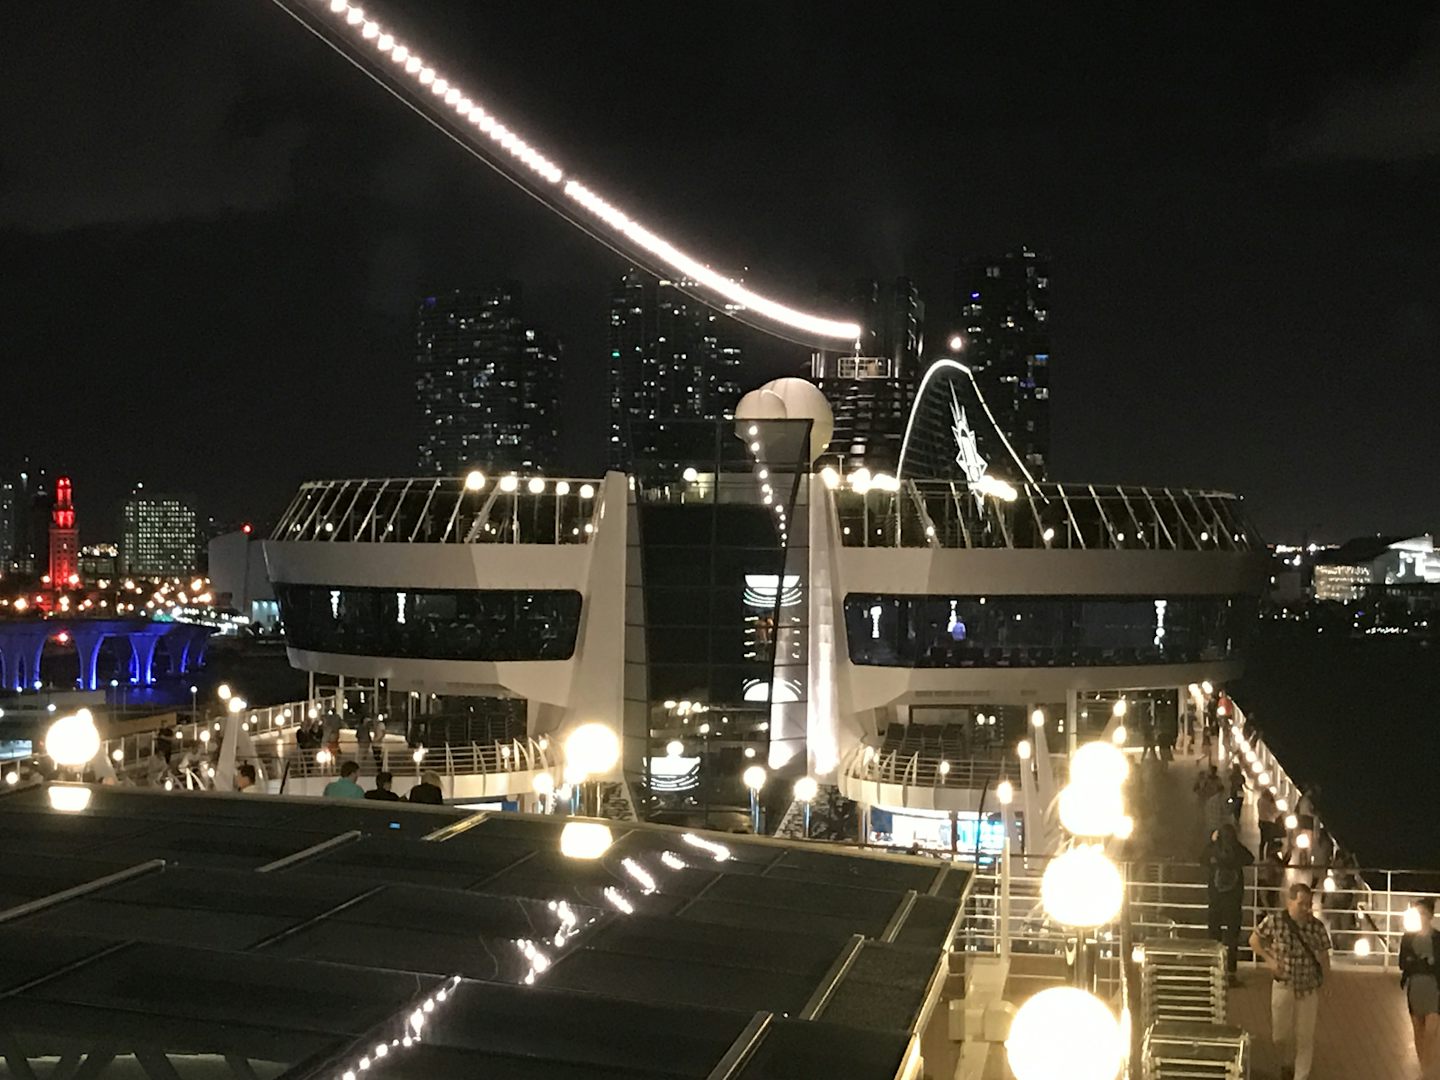 Ship at night